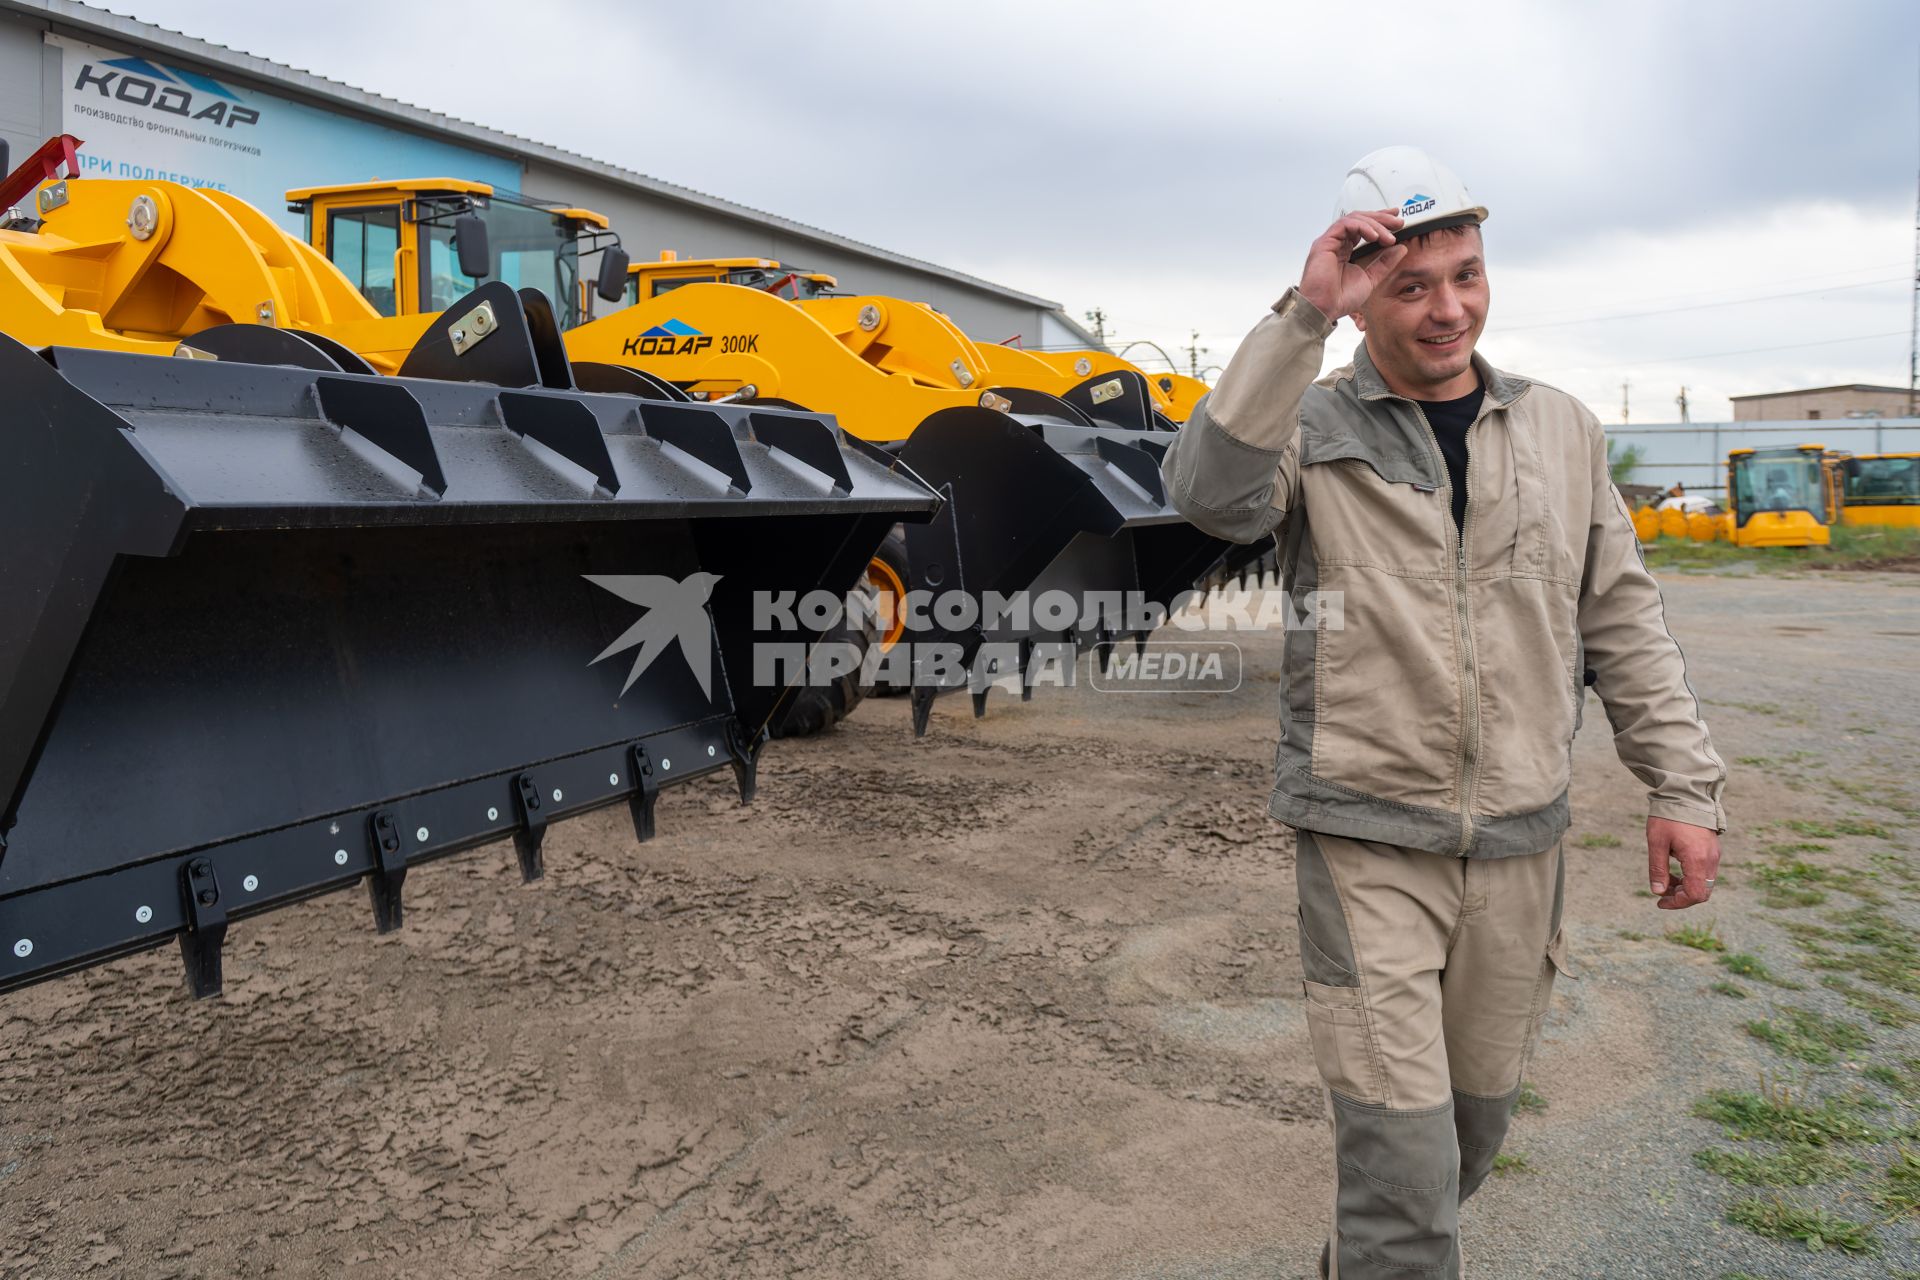 Забайкальский край, г. Чита. Фронтальные погрузчики `Кодар`, произведенные компанией `Восток-Агро`, на территории завода производителя.